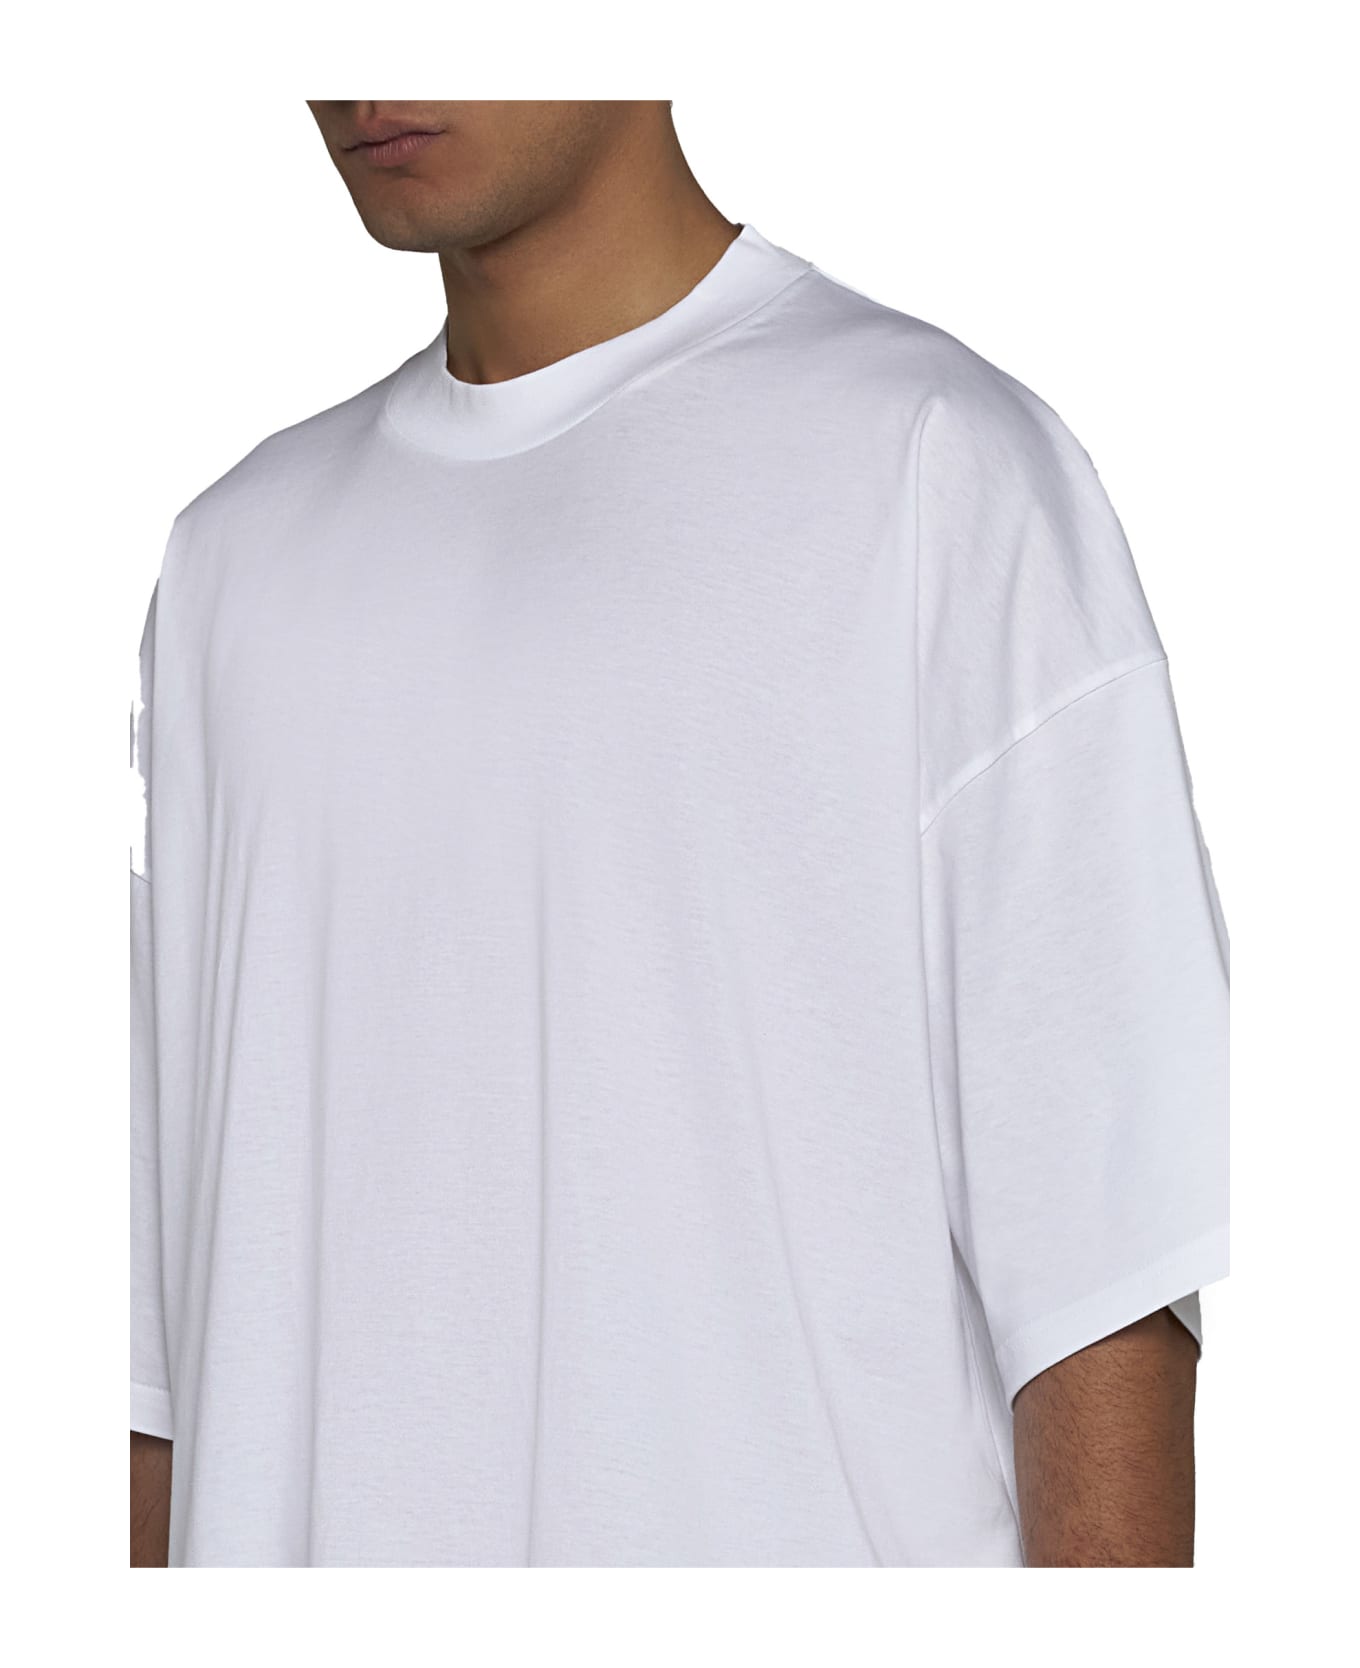 Studio Nicholson T-Shirt - Optic white シャツ